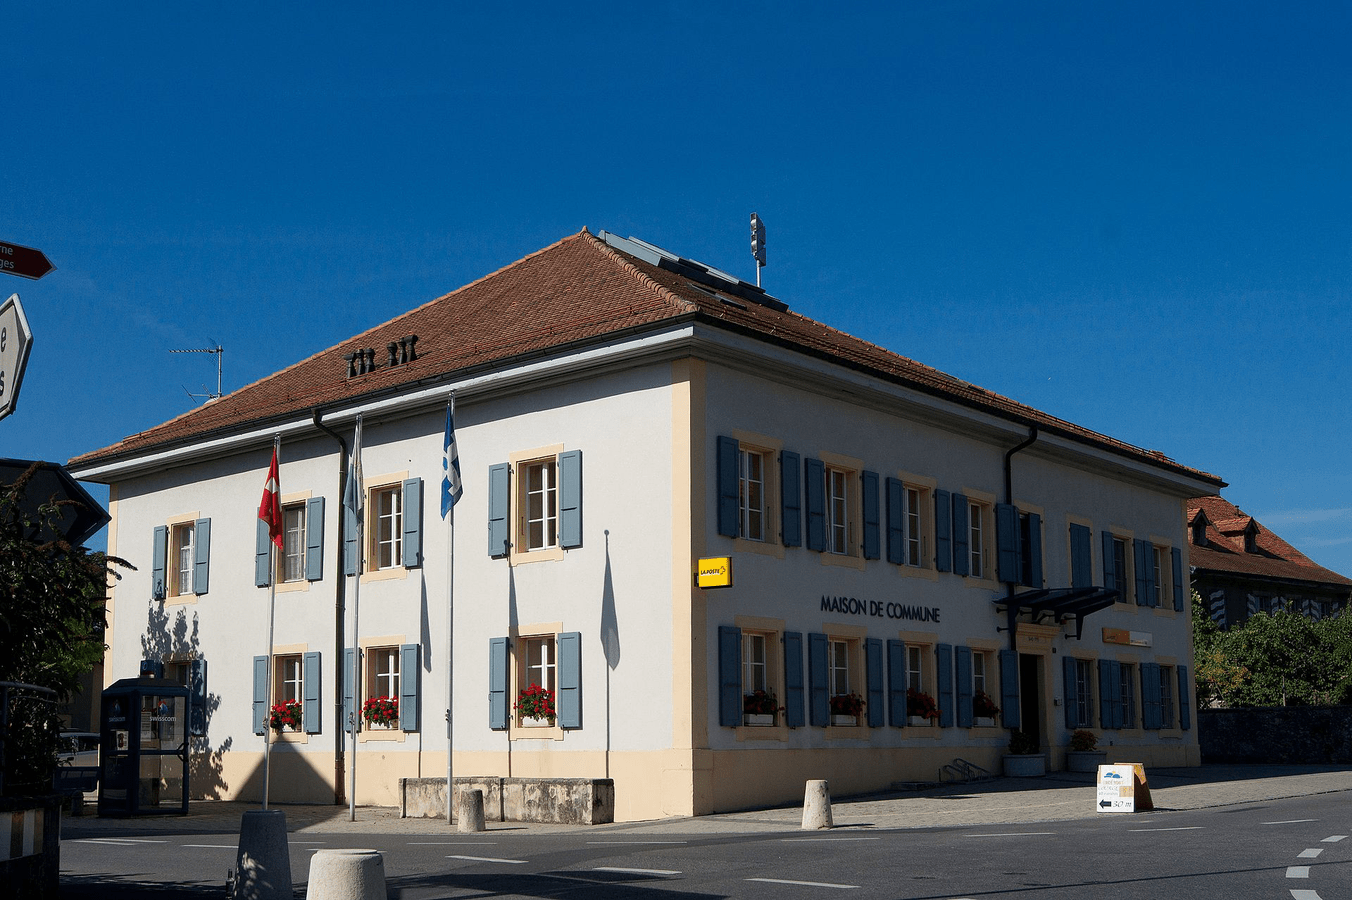 Maison de commune de Goumoens-la-Ville, canton de Vaud, Suisse.